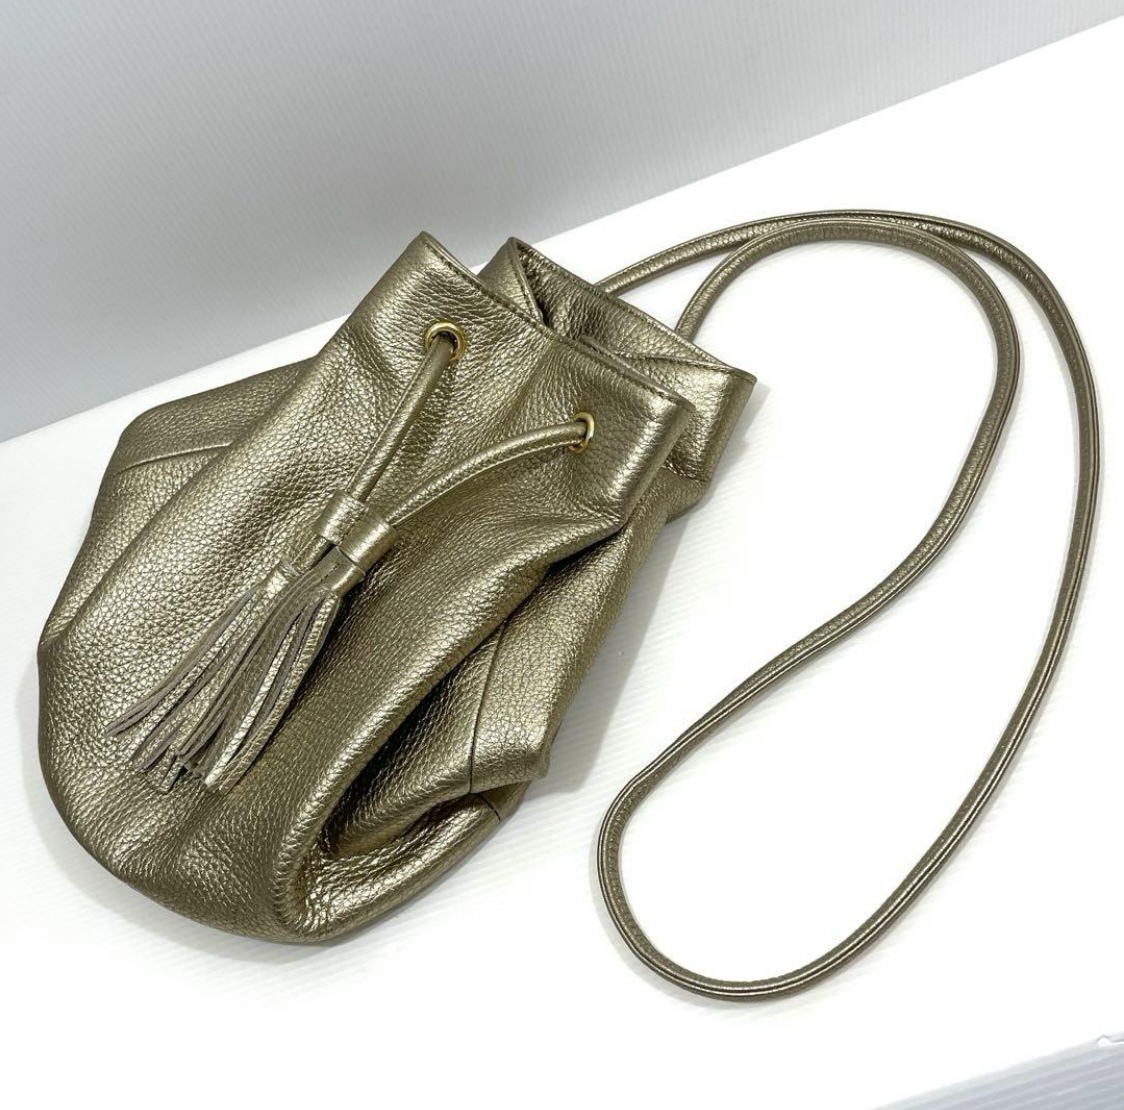 イタリア製本革 ショルダーバッグ 2way 巾着バッグ 【ゴールド】_画像6